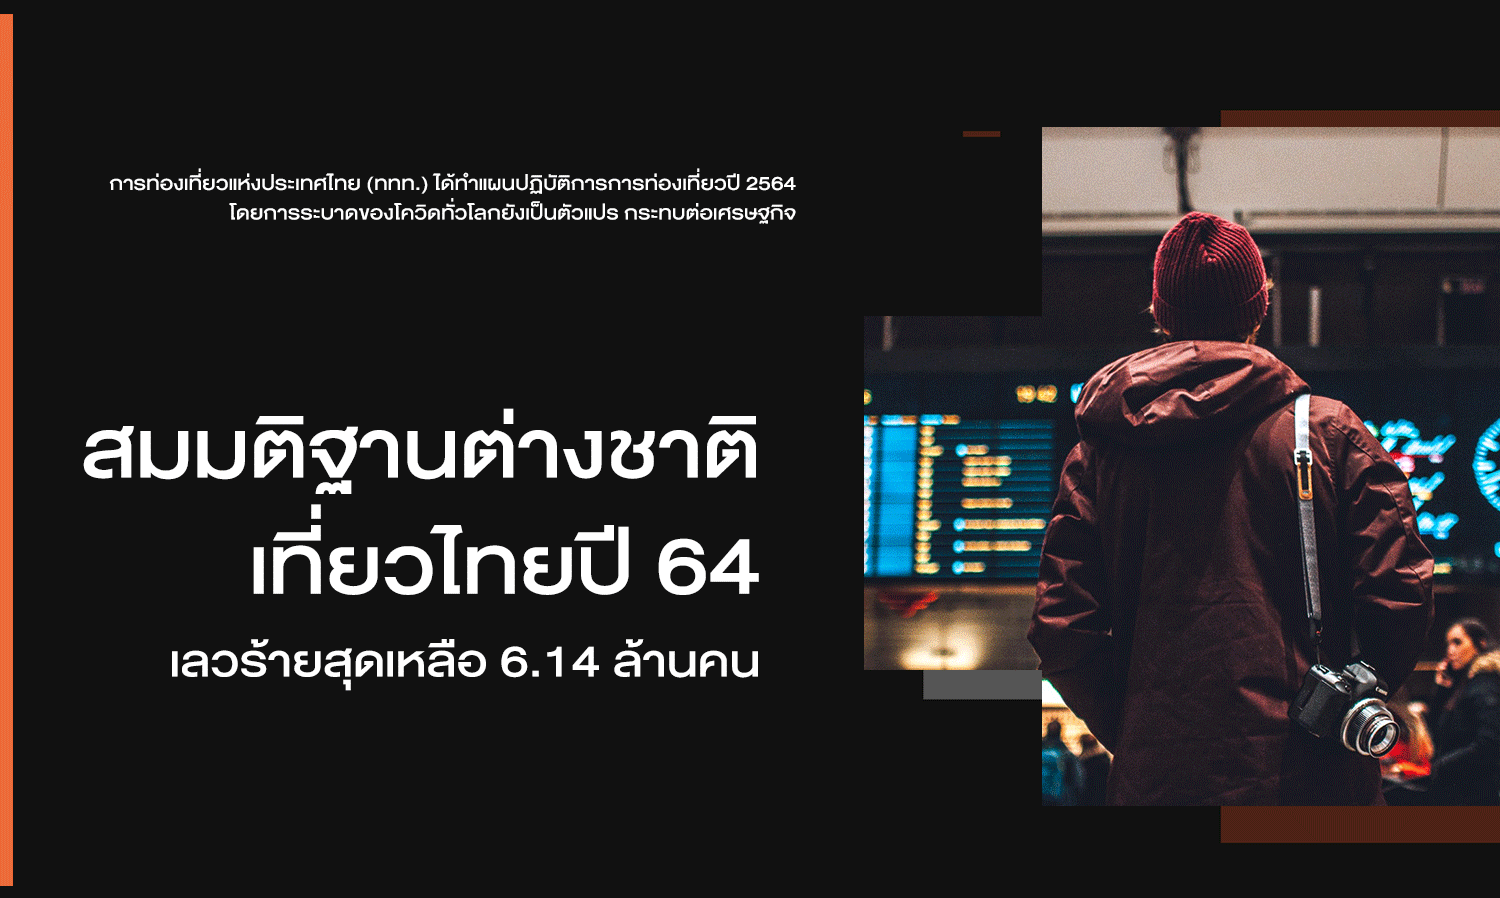 สมมติฐานต่างชาติเที่ยวไทยปี 64 เลวร้ายสุดเหลือ 6.14 ล้านคน